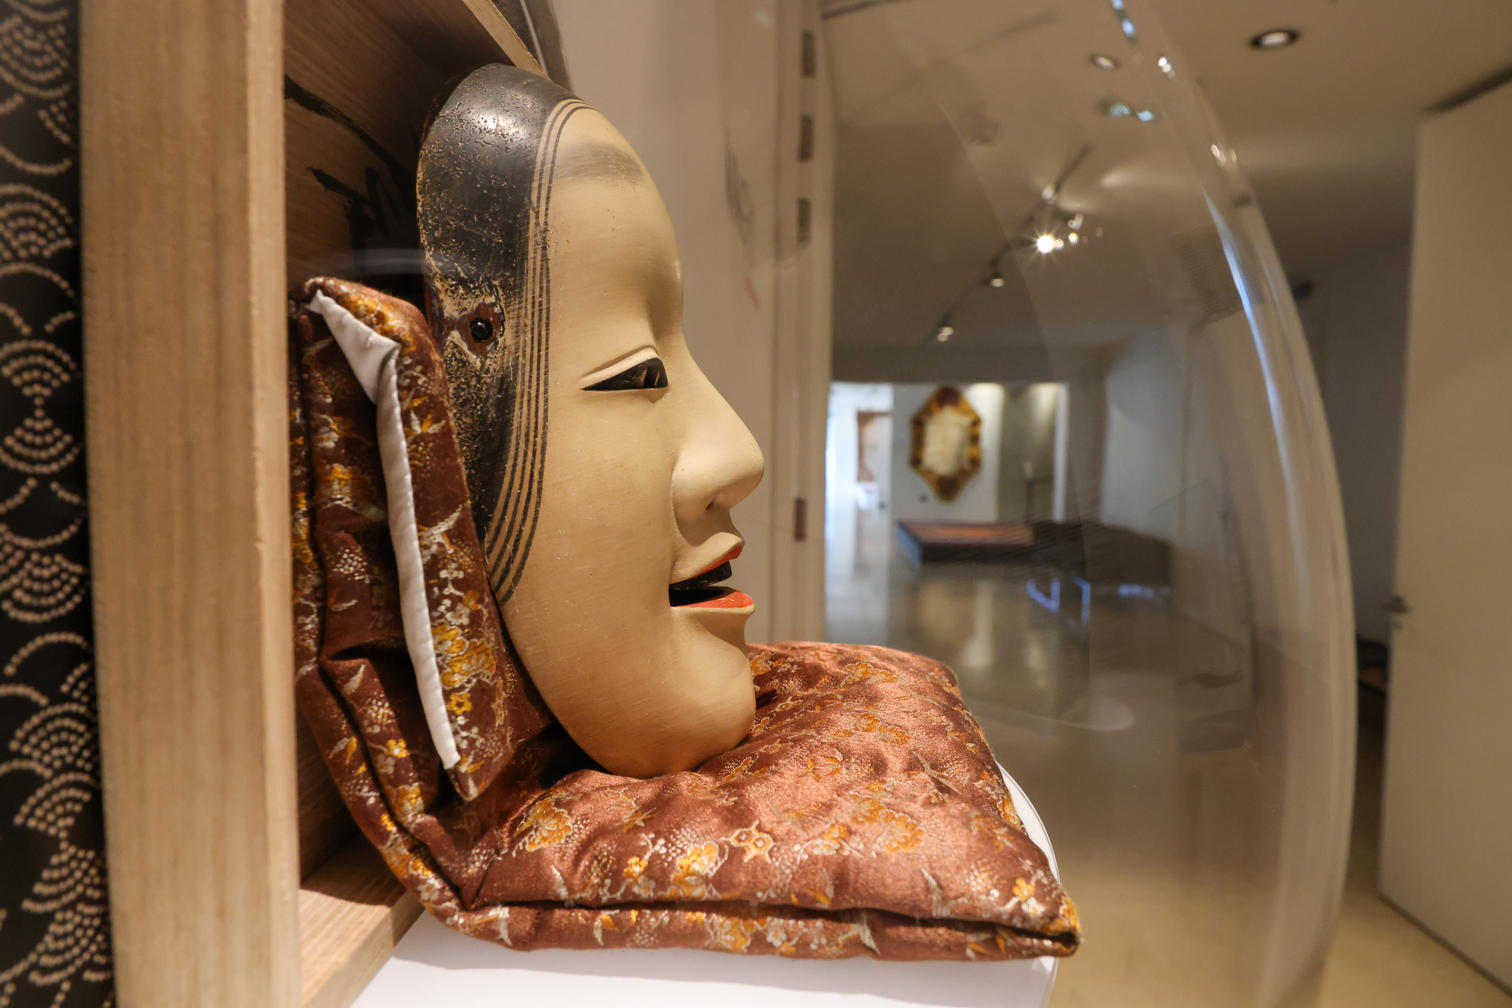 Exposition NINGYO L'art d'offrir au Japon musée du Président Jacques Chirac Sarran Corrèze